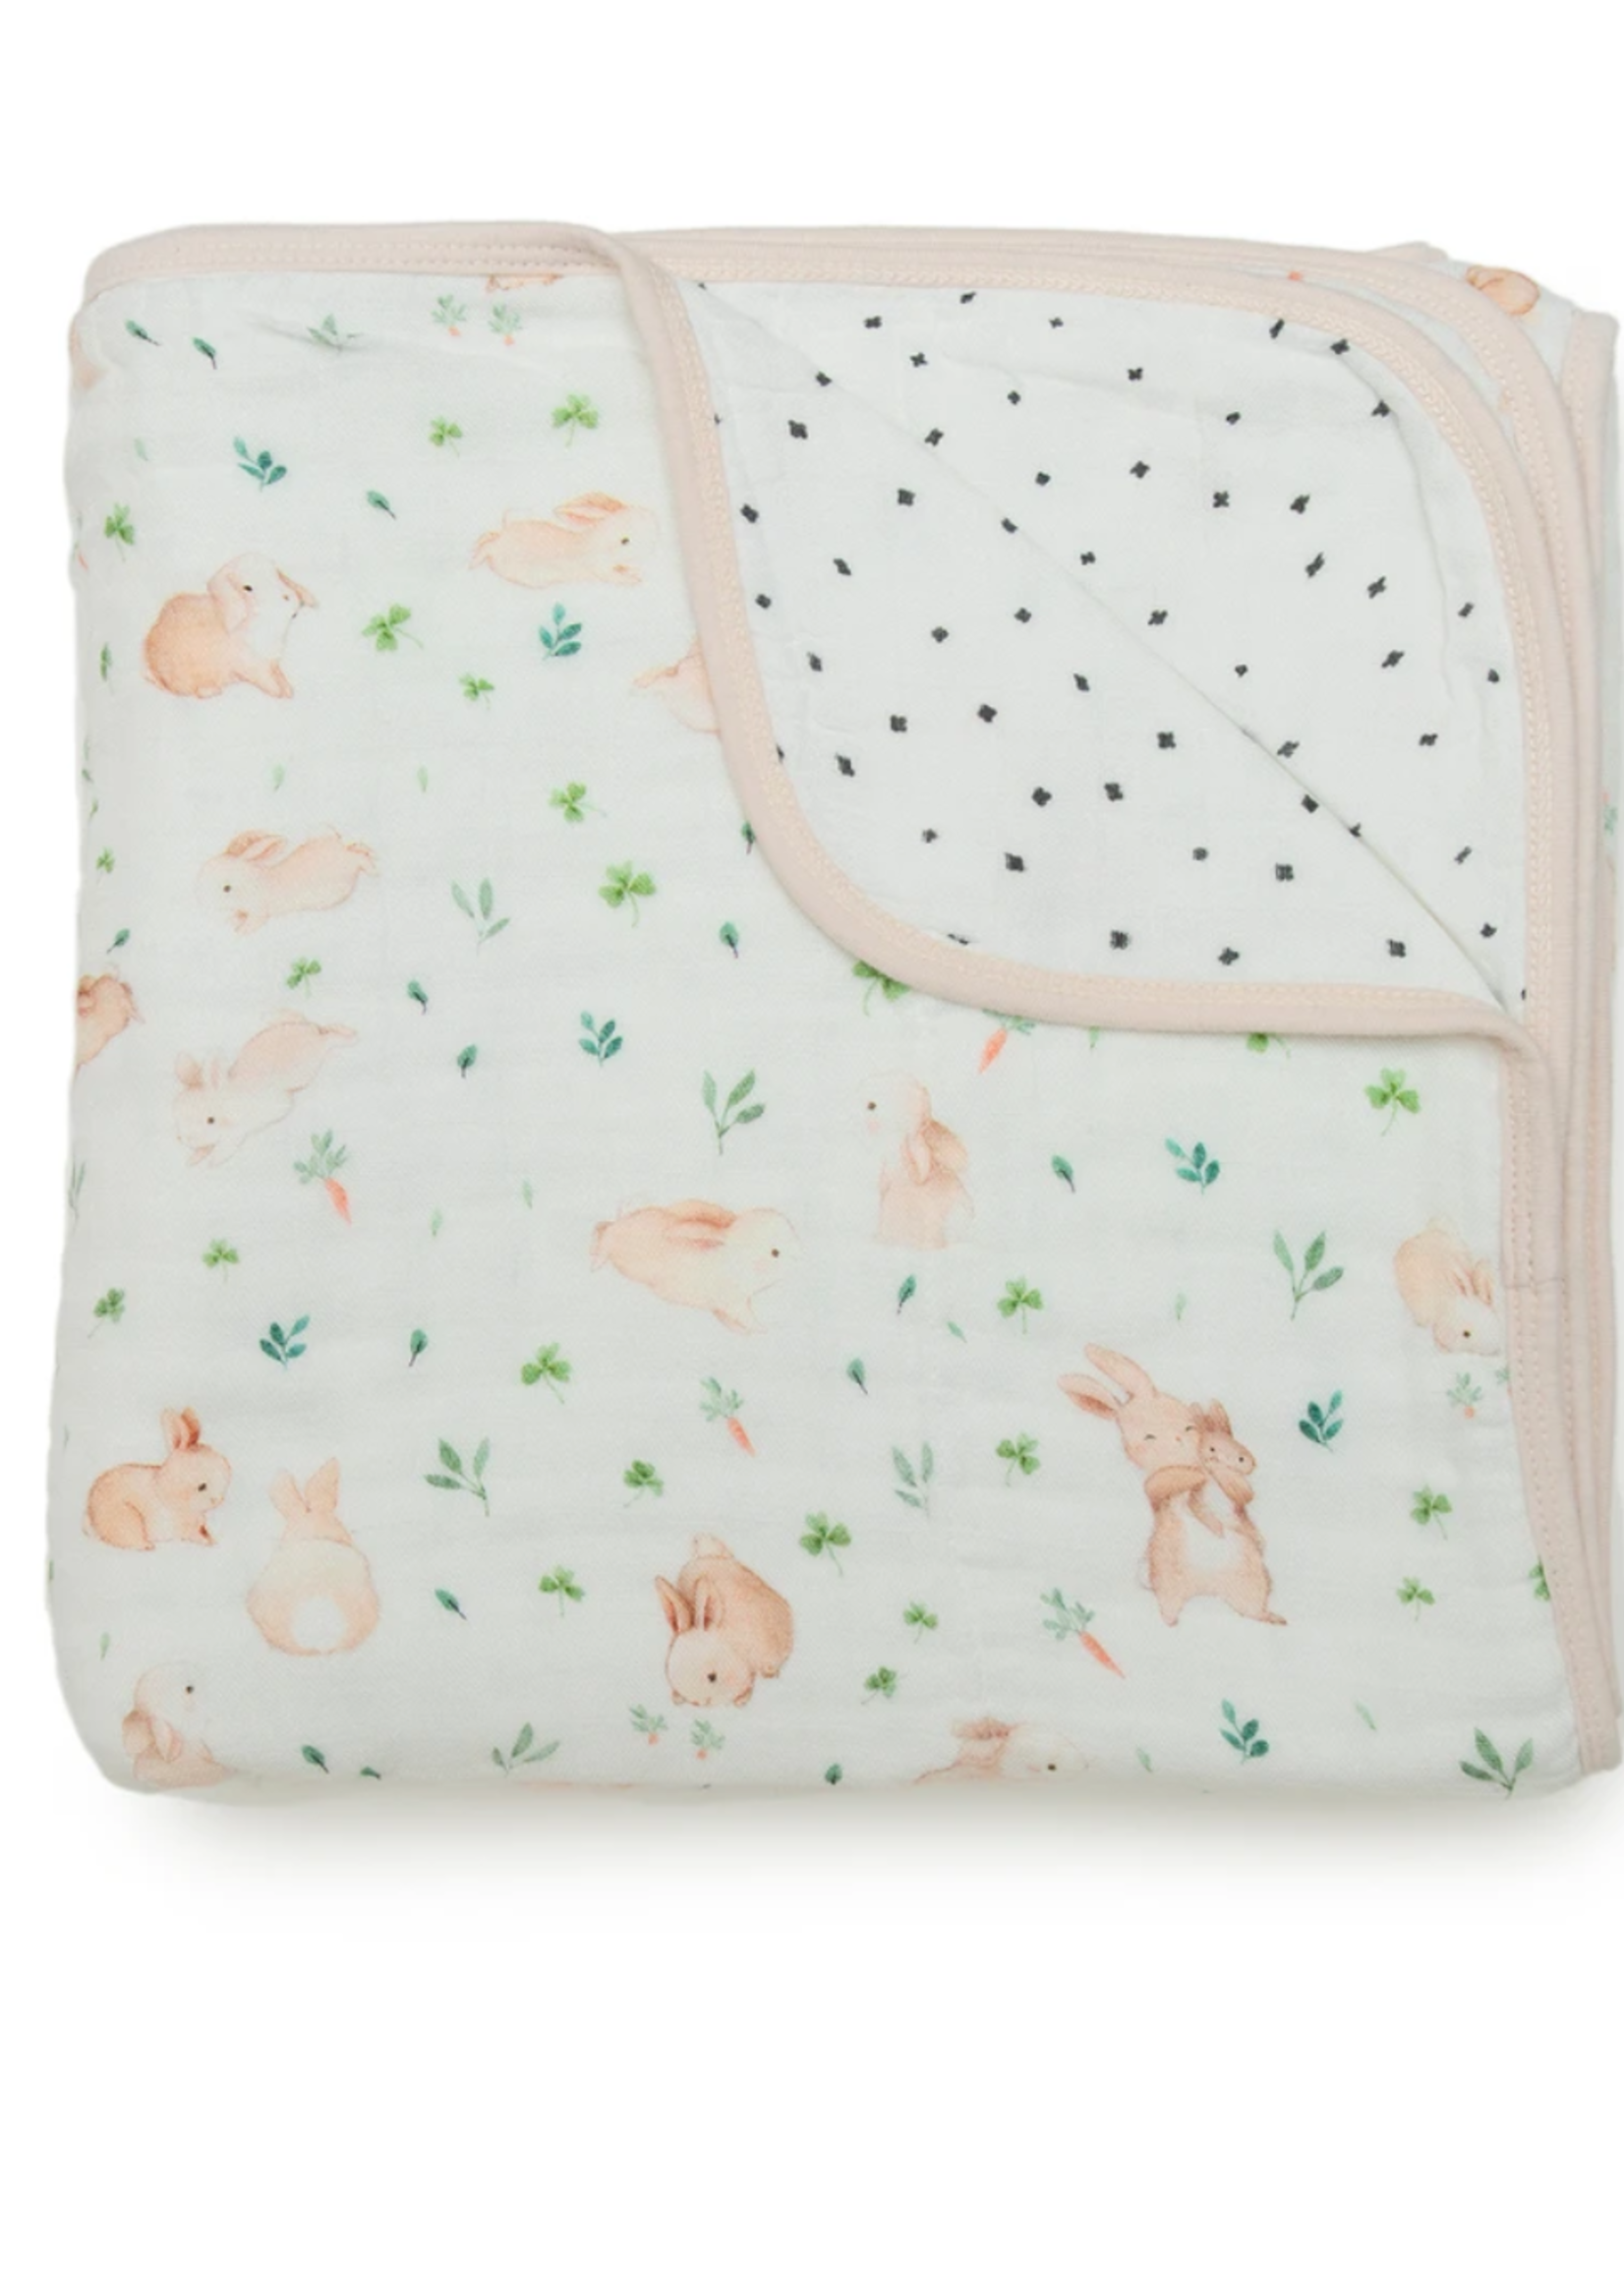 Elitaire Petite Muslin Quilt Blanket - Bunny Meadow